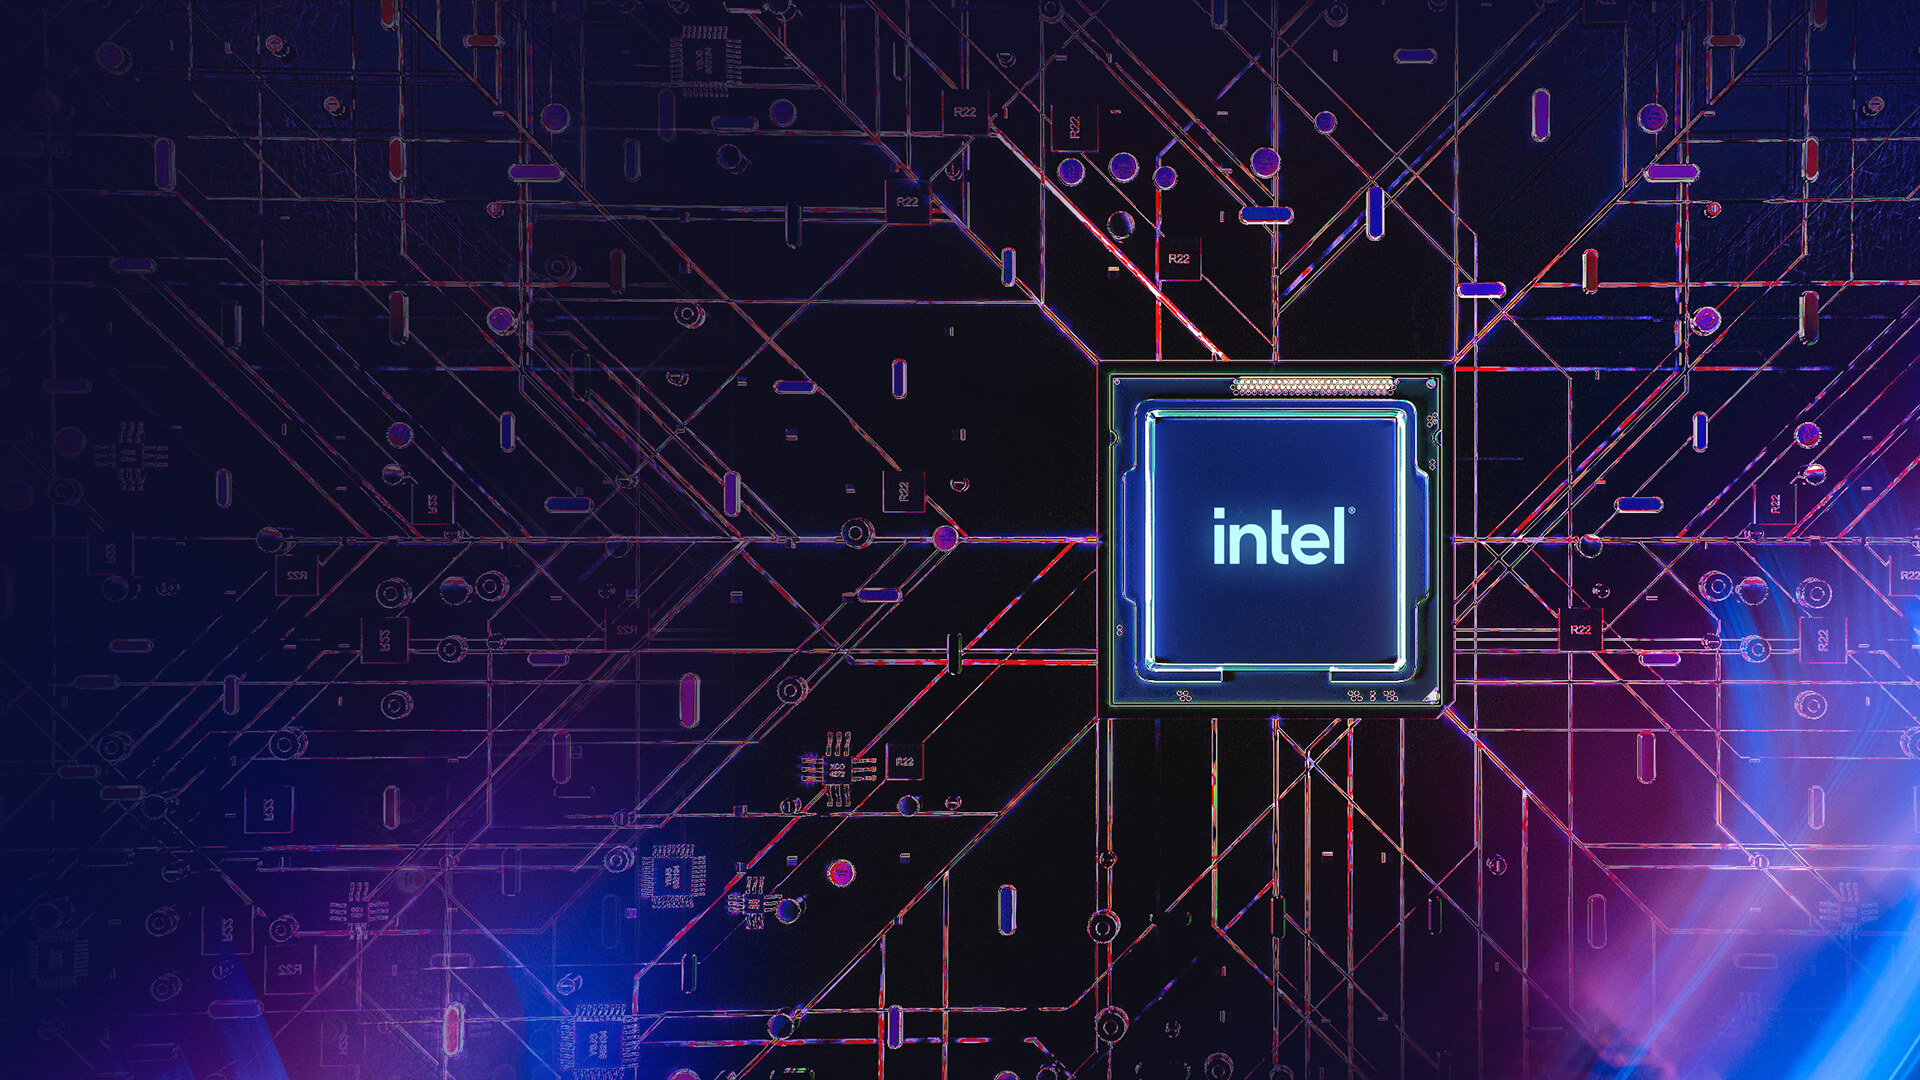 보라색 마더보드 위에 놓인 Intel CPU와 프로세서로 전류가 흐르는 모습 형상화.